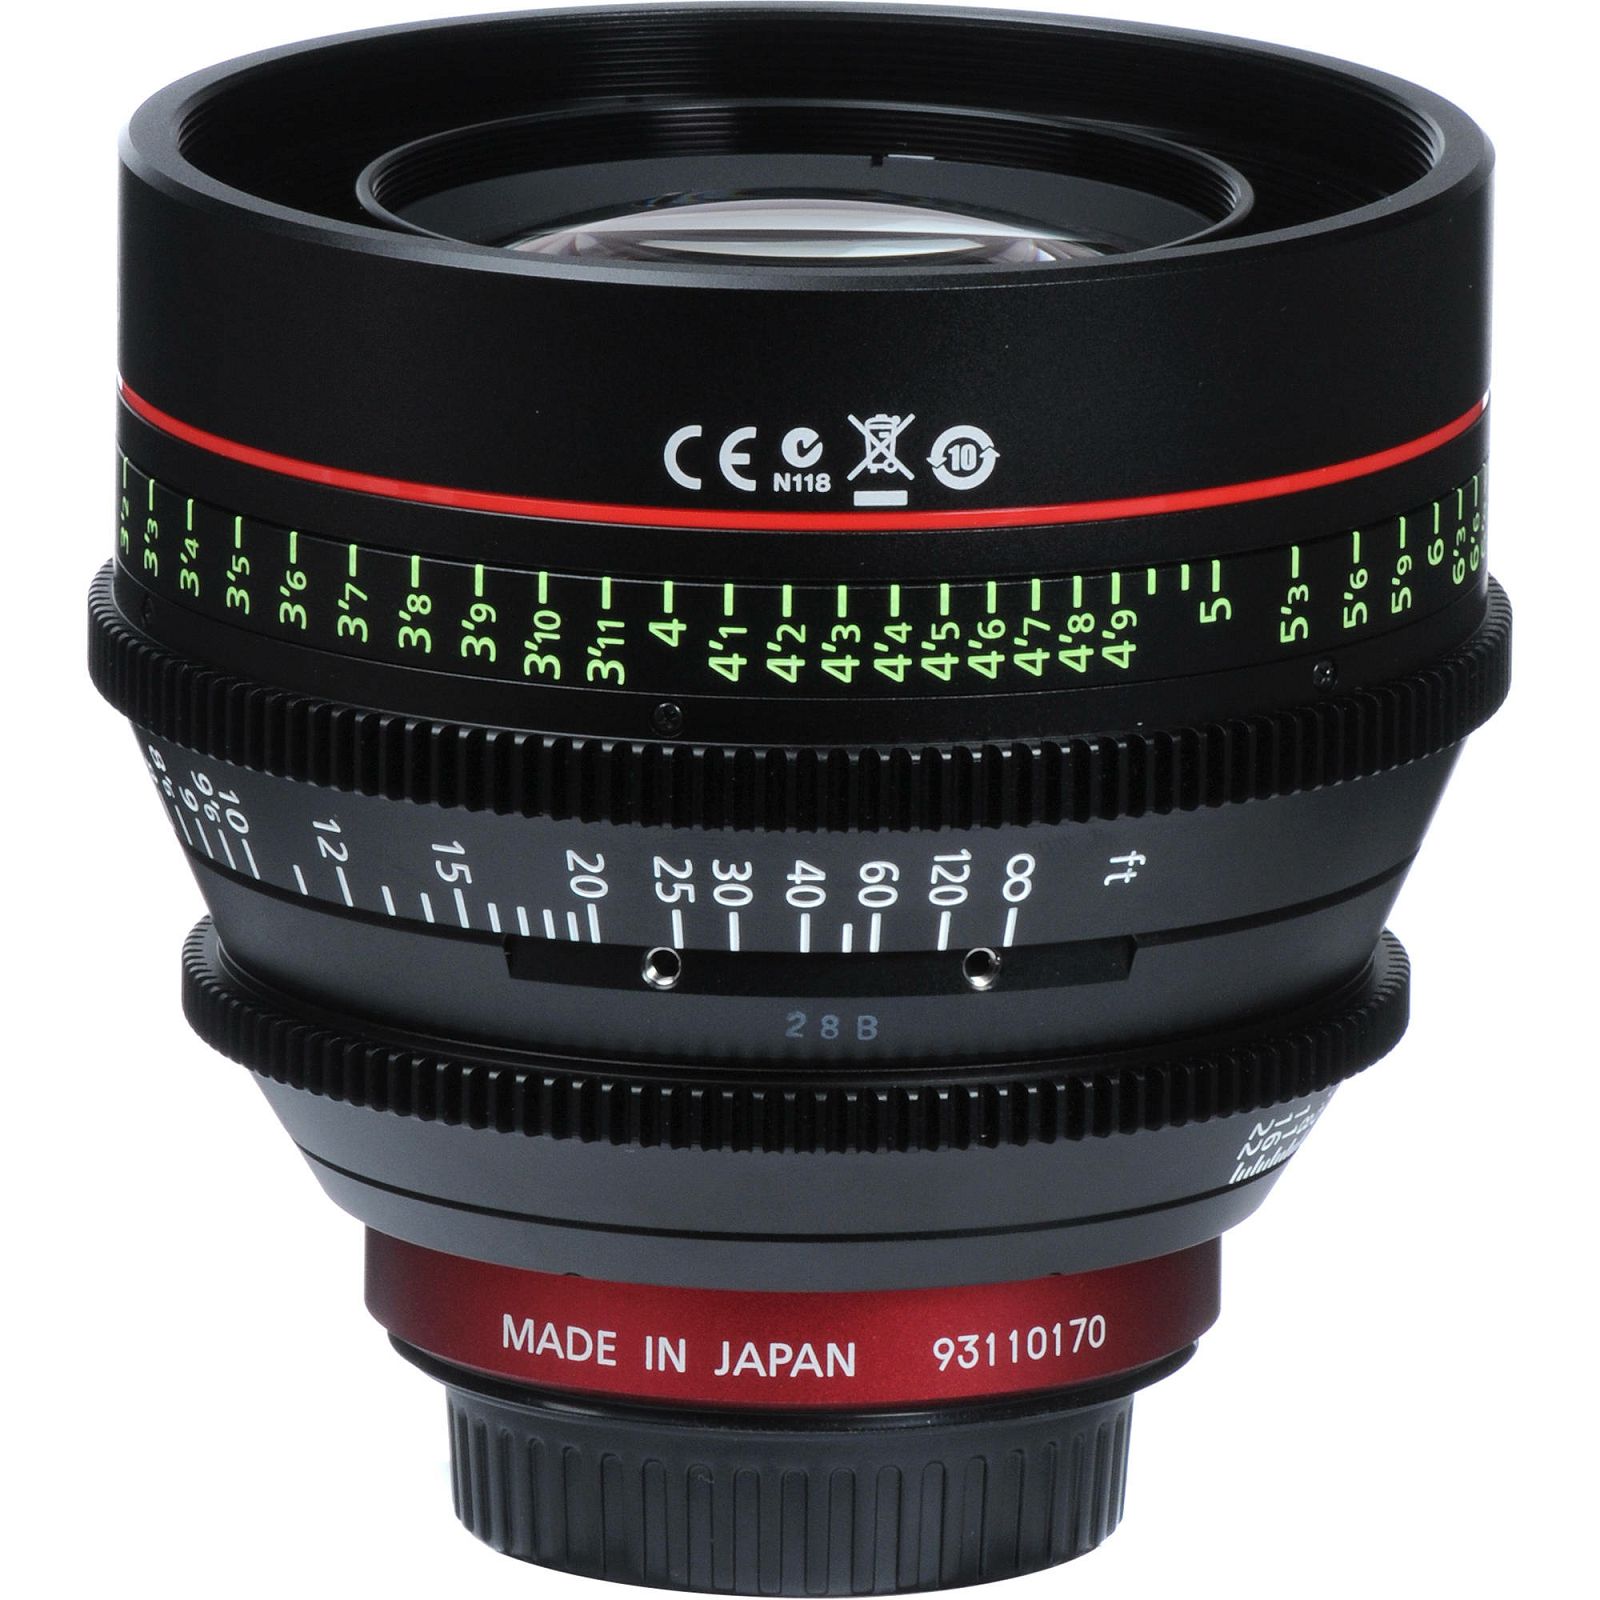 Canon Cine Lens KIT CN-E 50/85/135 Bundle Primes lens set (CN-E 50mm T1.3 L F + CN-E 85mm L F + CN-E 135mm T2.2 L F) (8326B008AA)